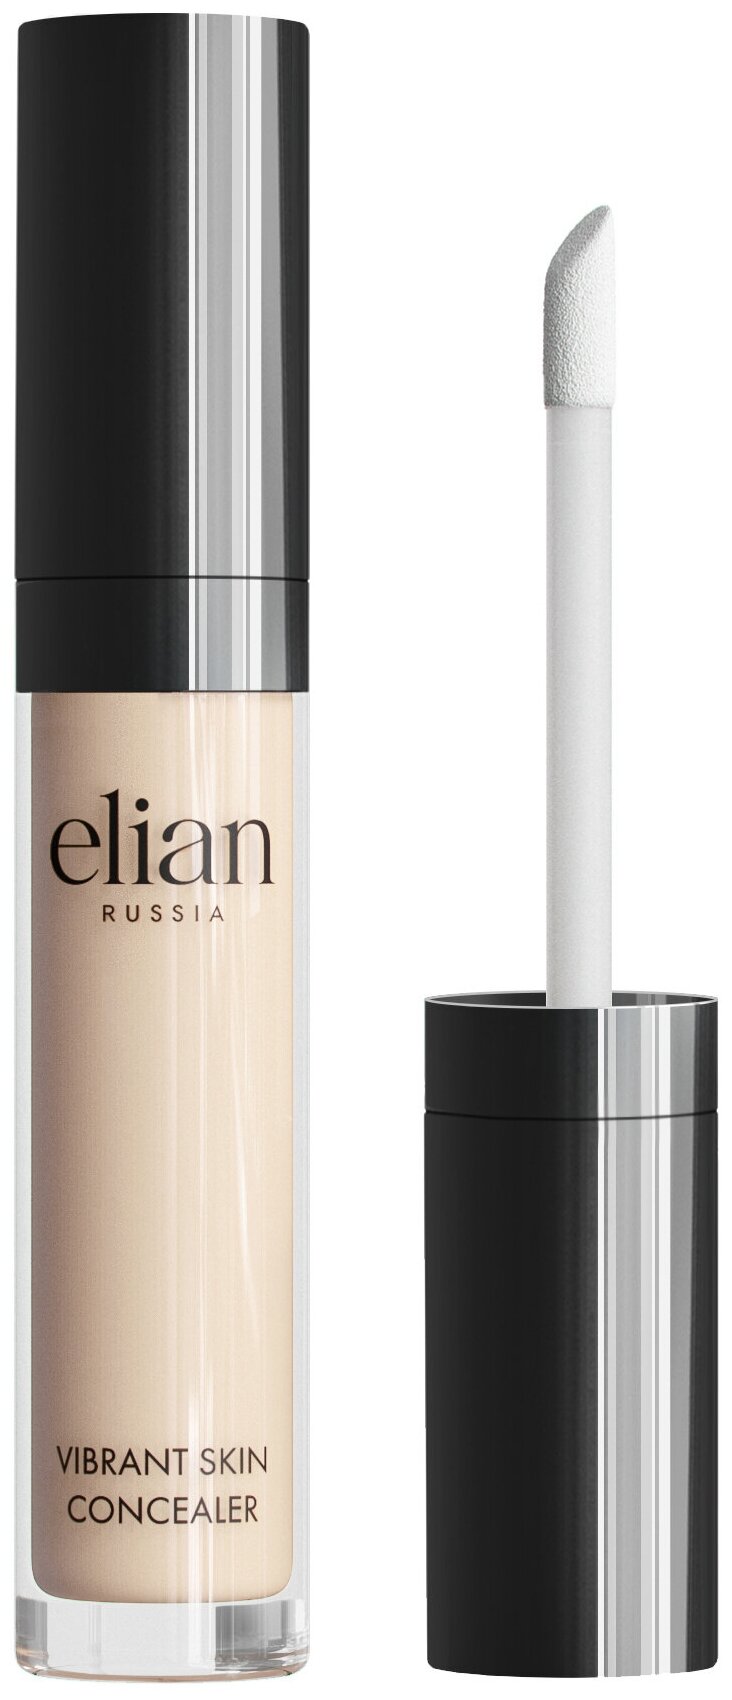 Кремовый консилер Vibrant Skin Concealer, Elian Russia (01 Fair)